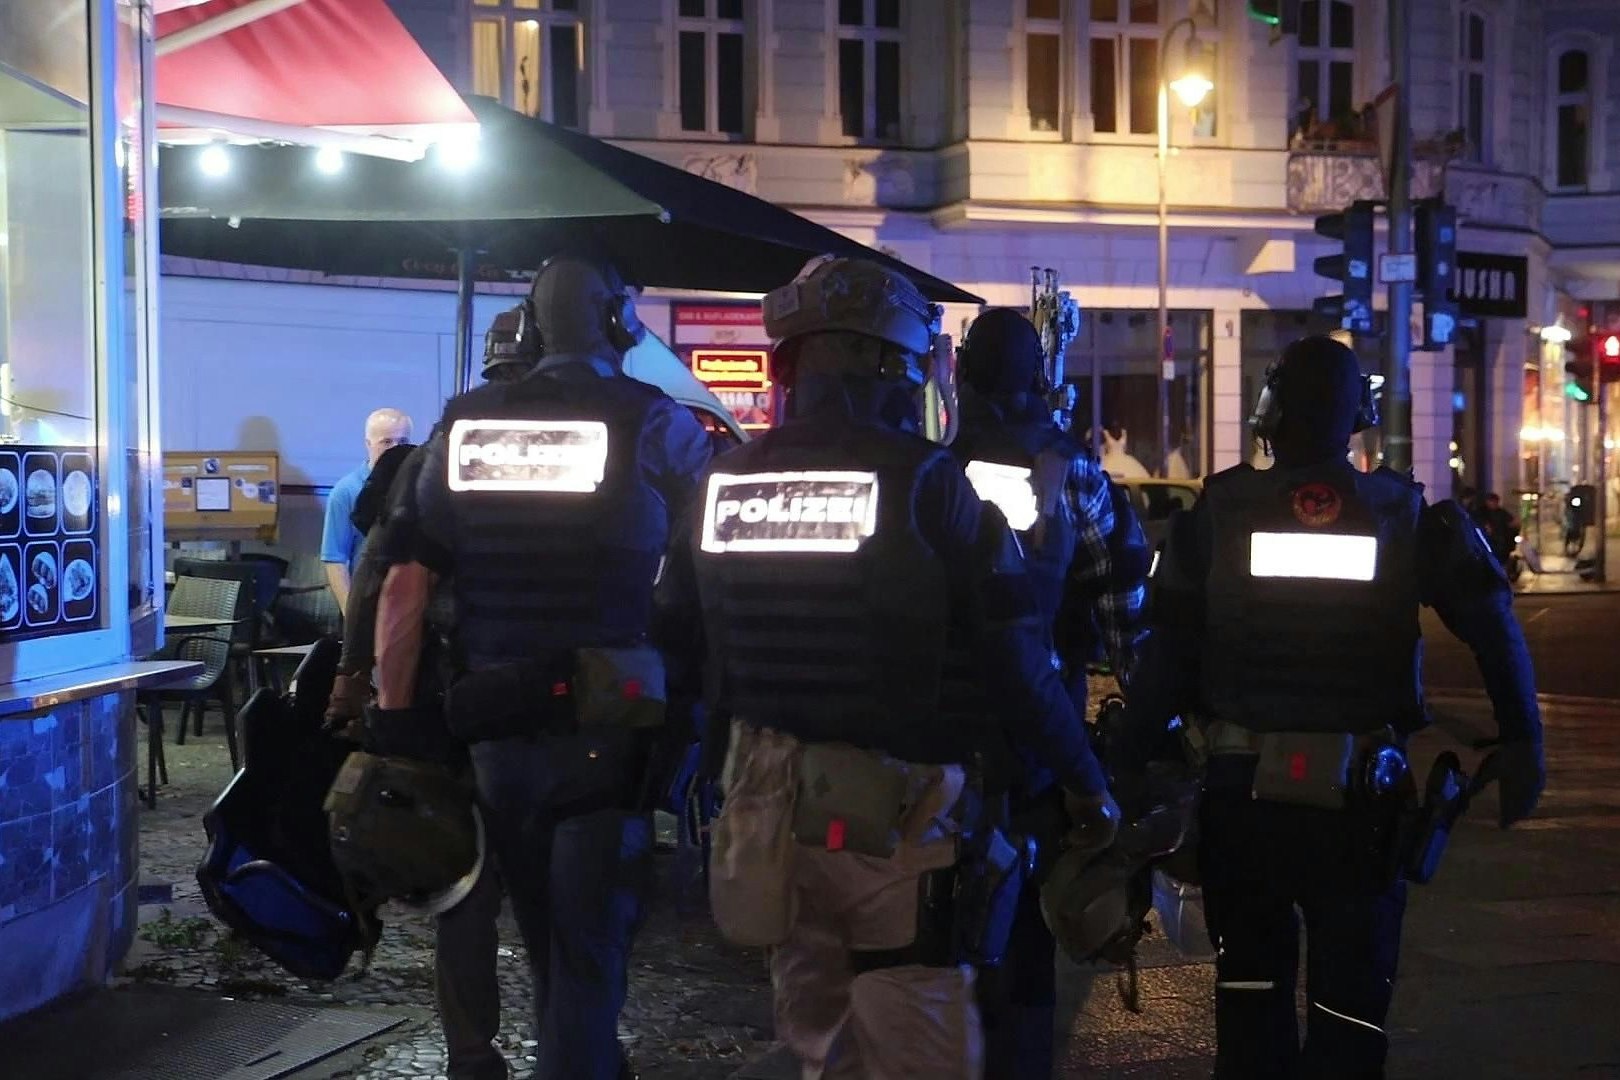 drogen-razzia in berlin: sek durchsucht wohnungen, polizei nimmt drei männer fest